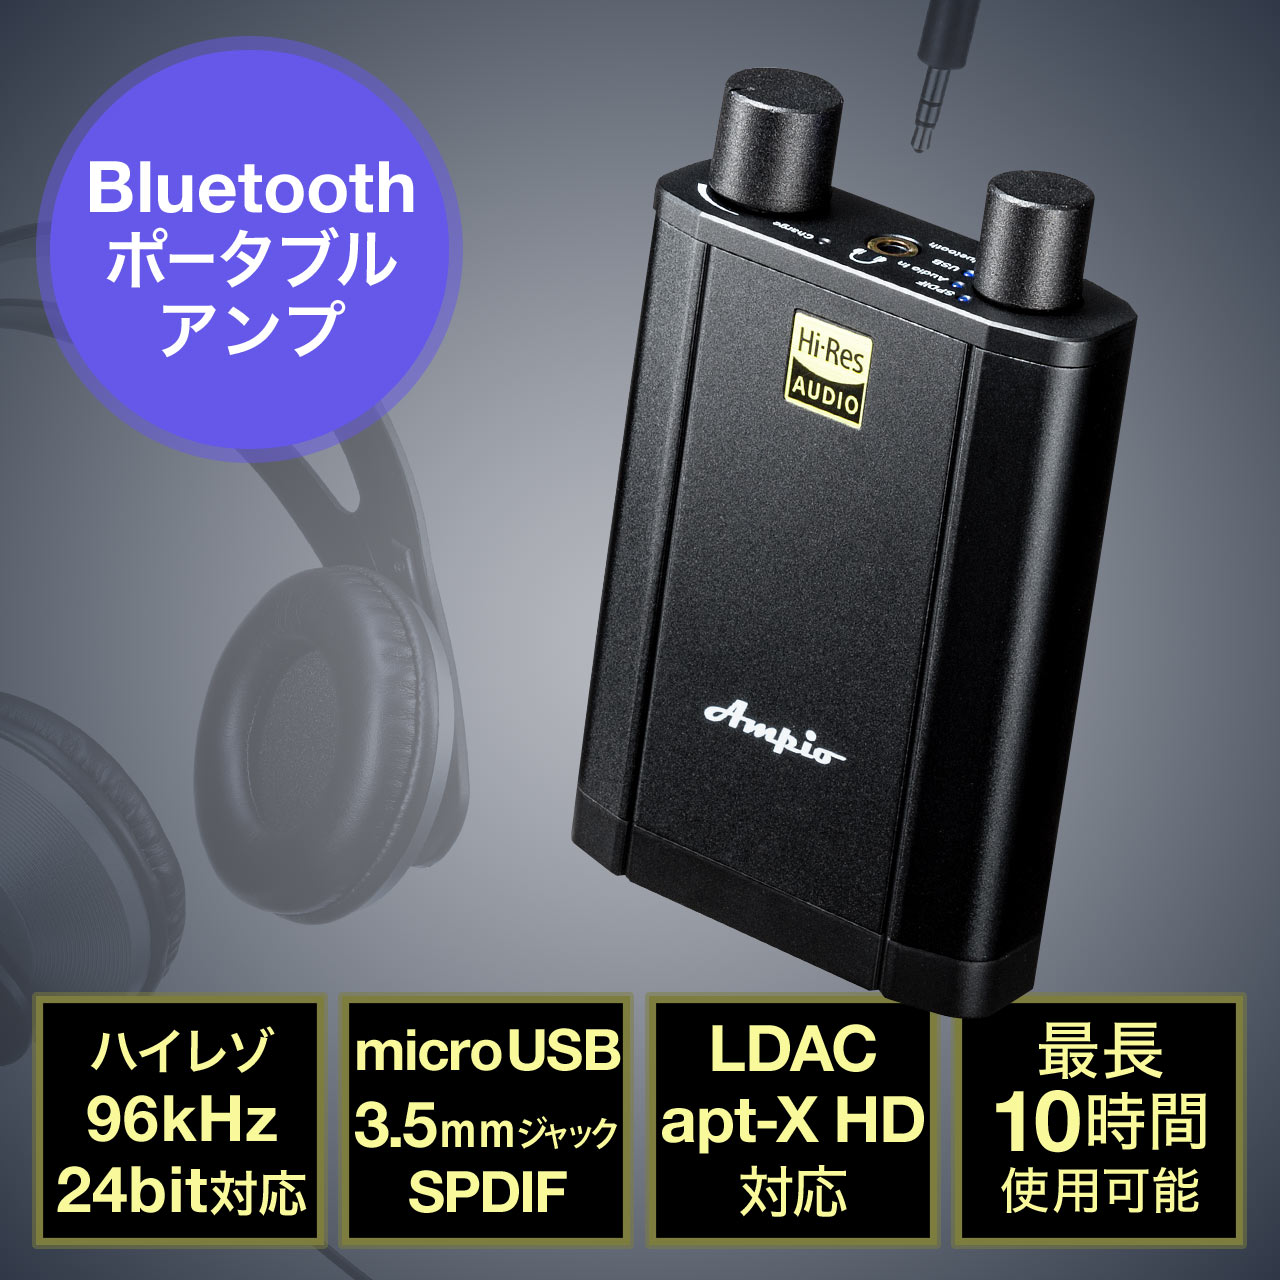 Ampio Vd 60 Bluetoothポータブルアンプ ヘッドホンアンプ 高音質 ハイレゾ対応 c Ldac対応 光デジタル対応 Vd 60の販売商品 通販ならサンワダイレクト